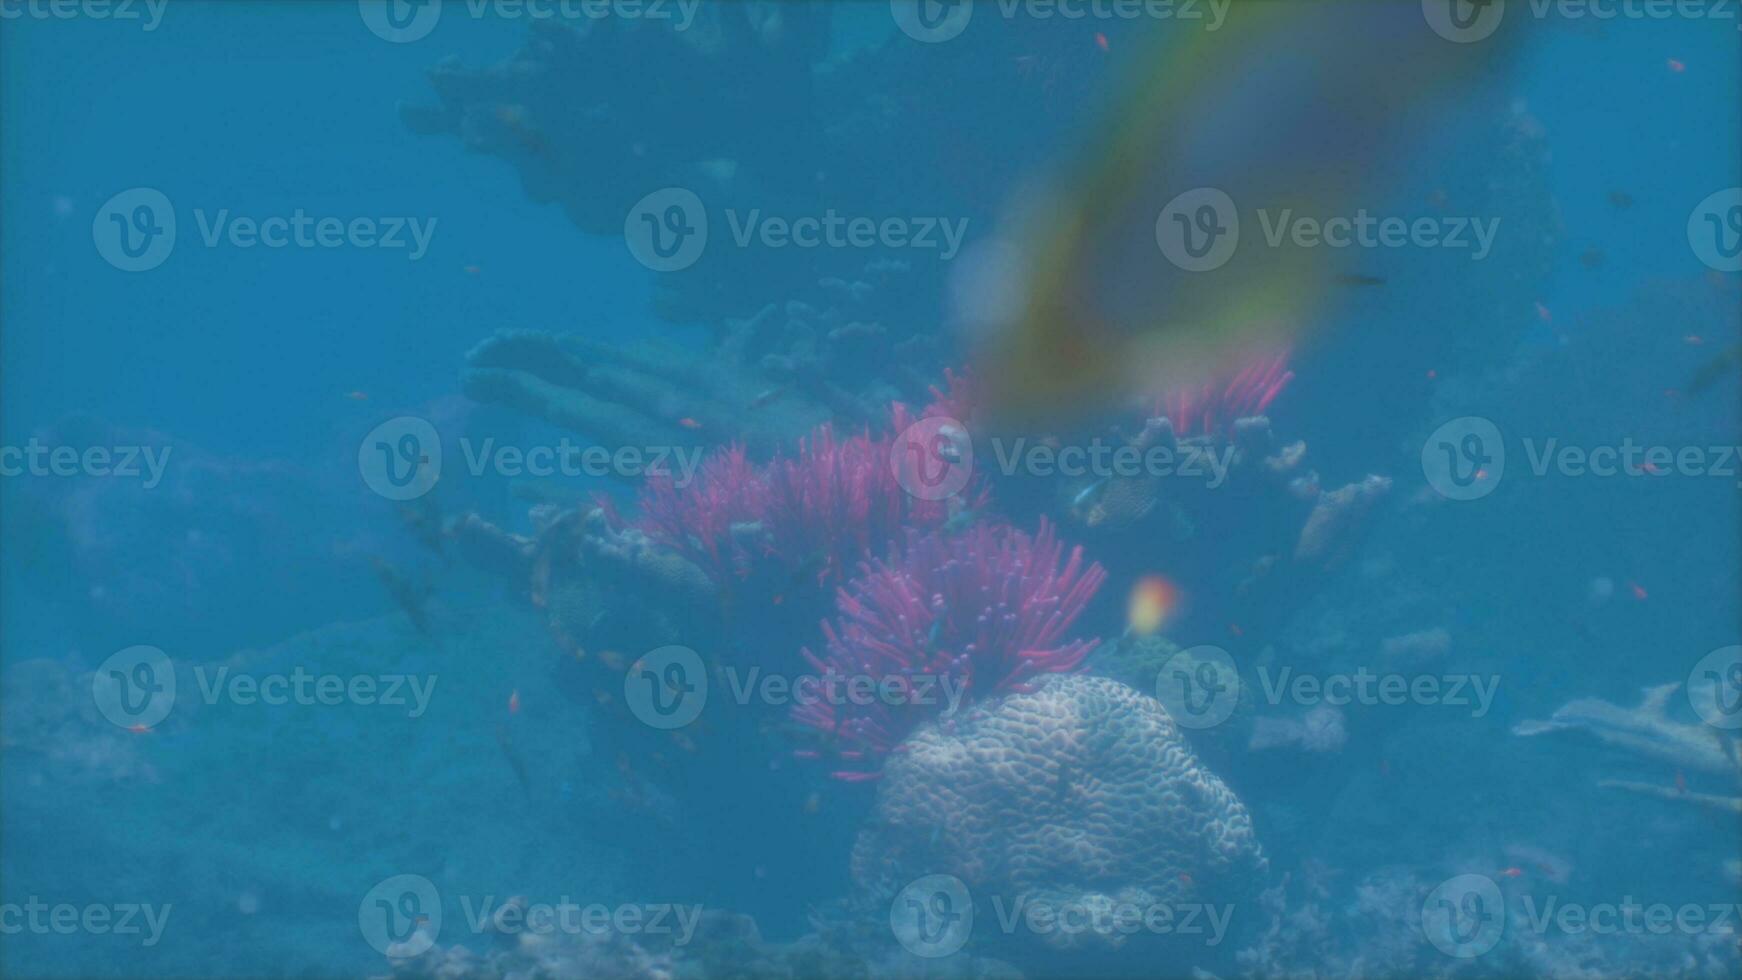 een koraal en een vis in de water foto